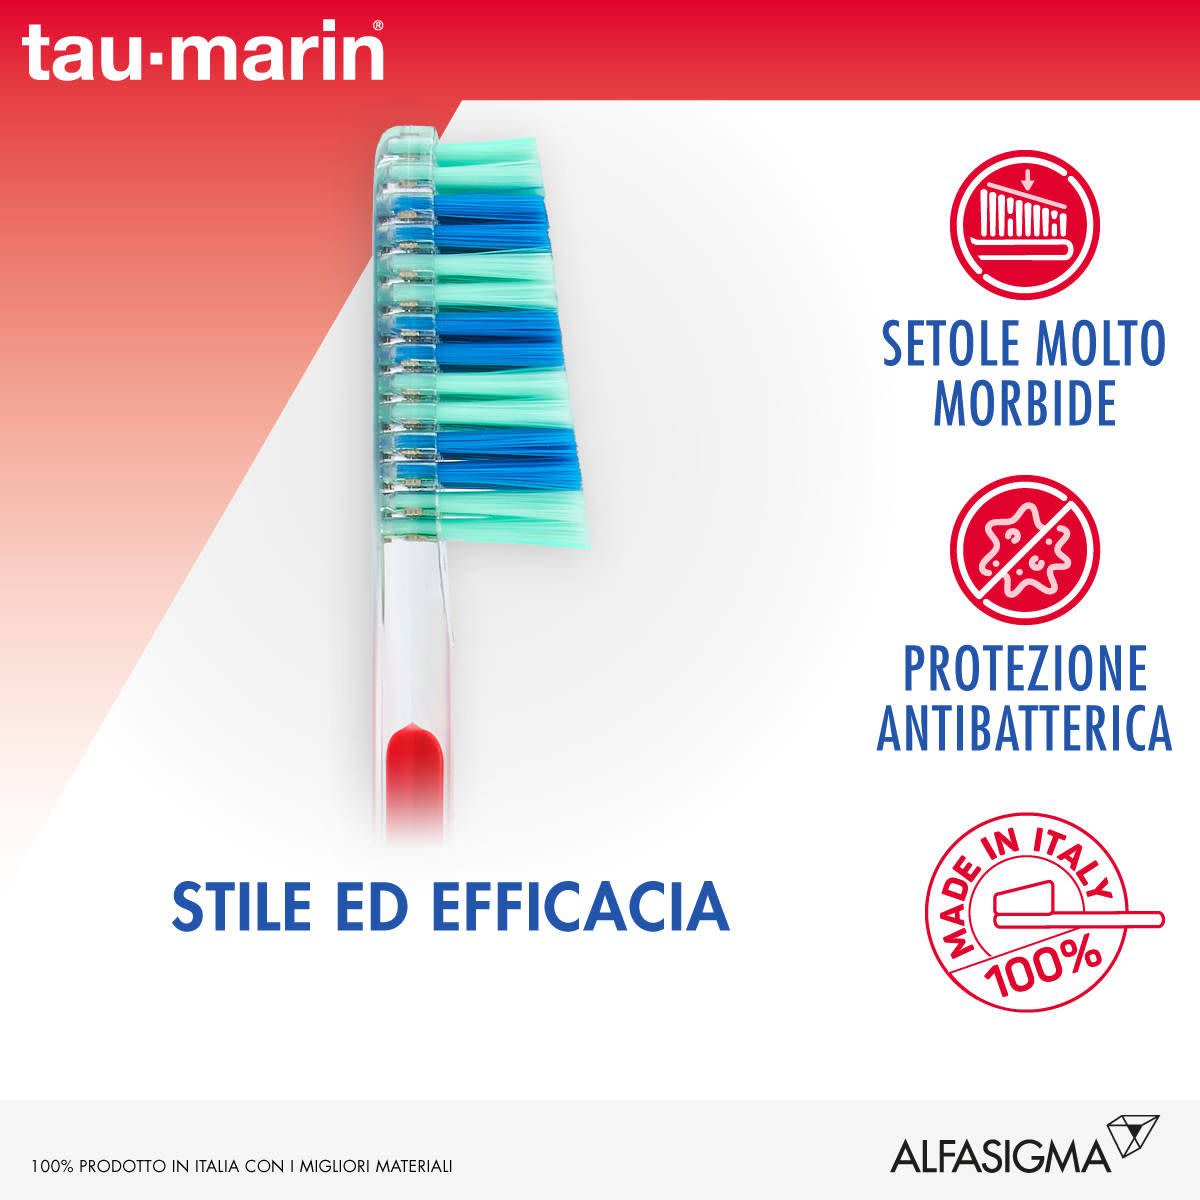 981354121 - Tau-Marin Spazzolino Scalare 33 Molto morbido con Antibatterico - 4707901_3.jpg